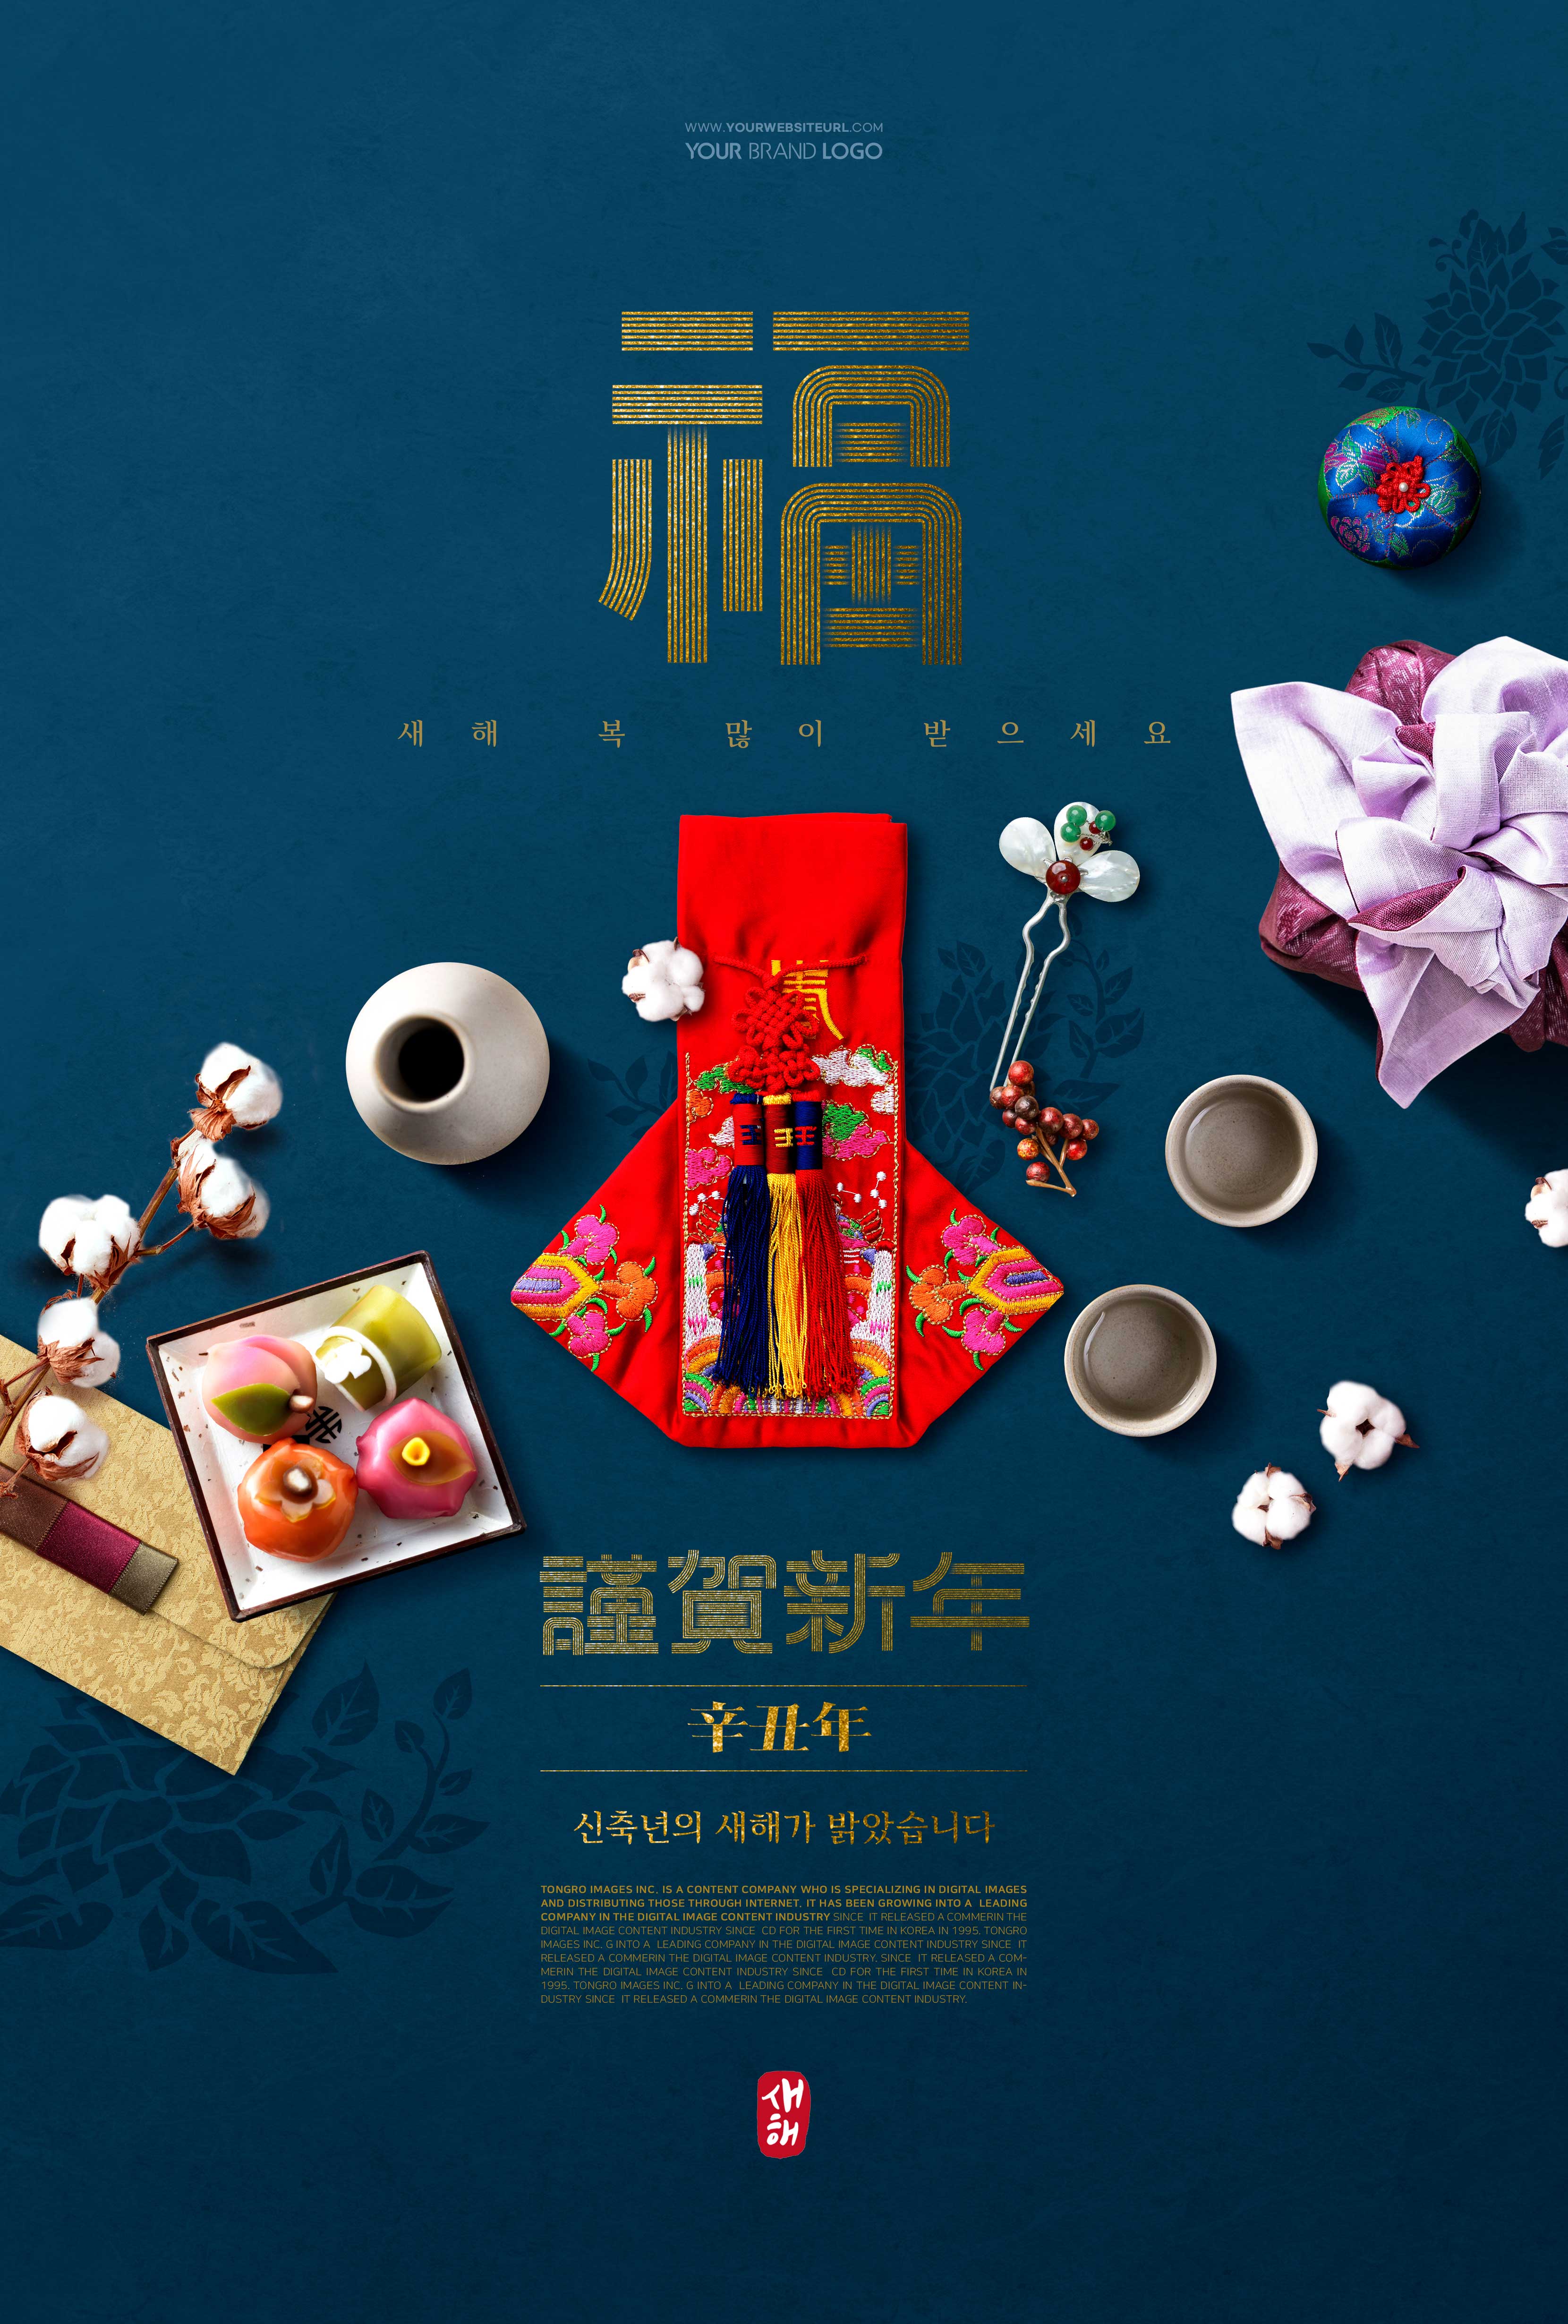 辛丑年新年韩国经典元素海报psd模板设计素材模板